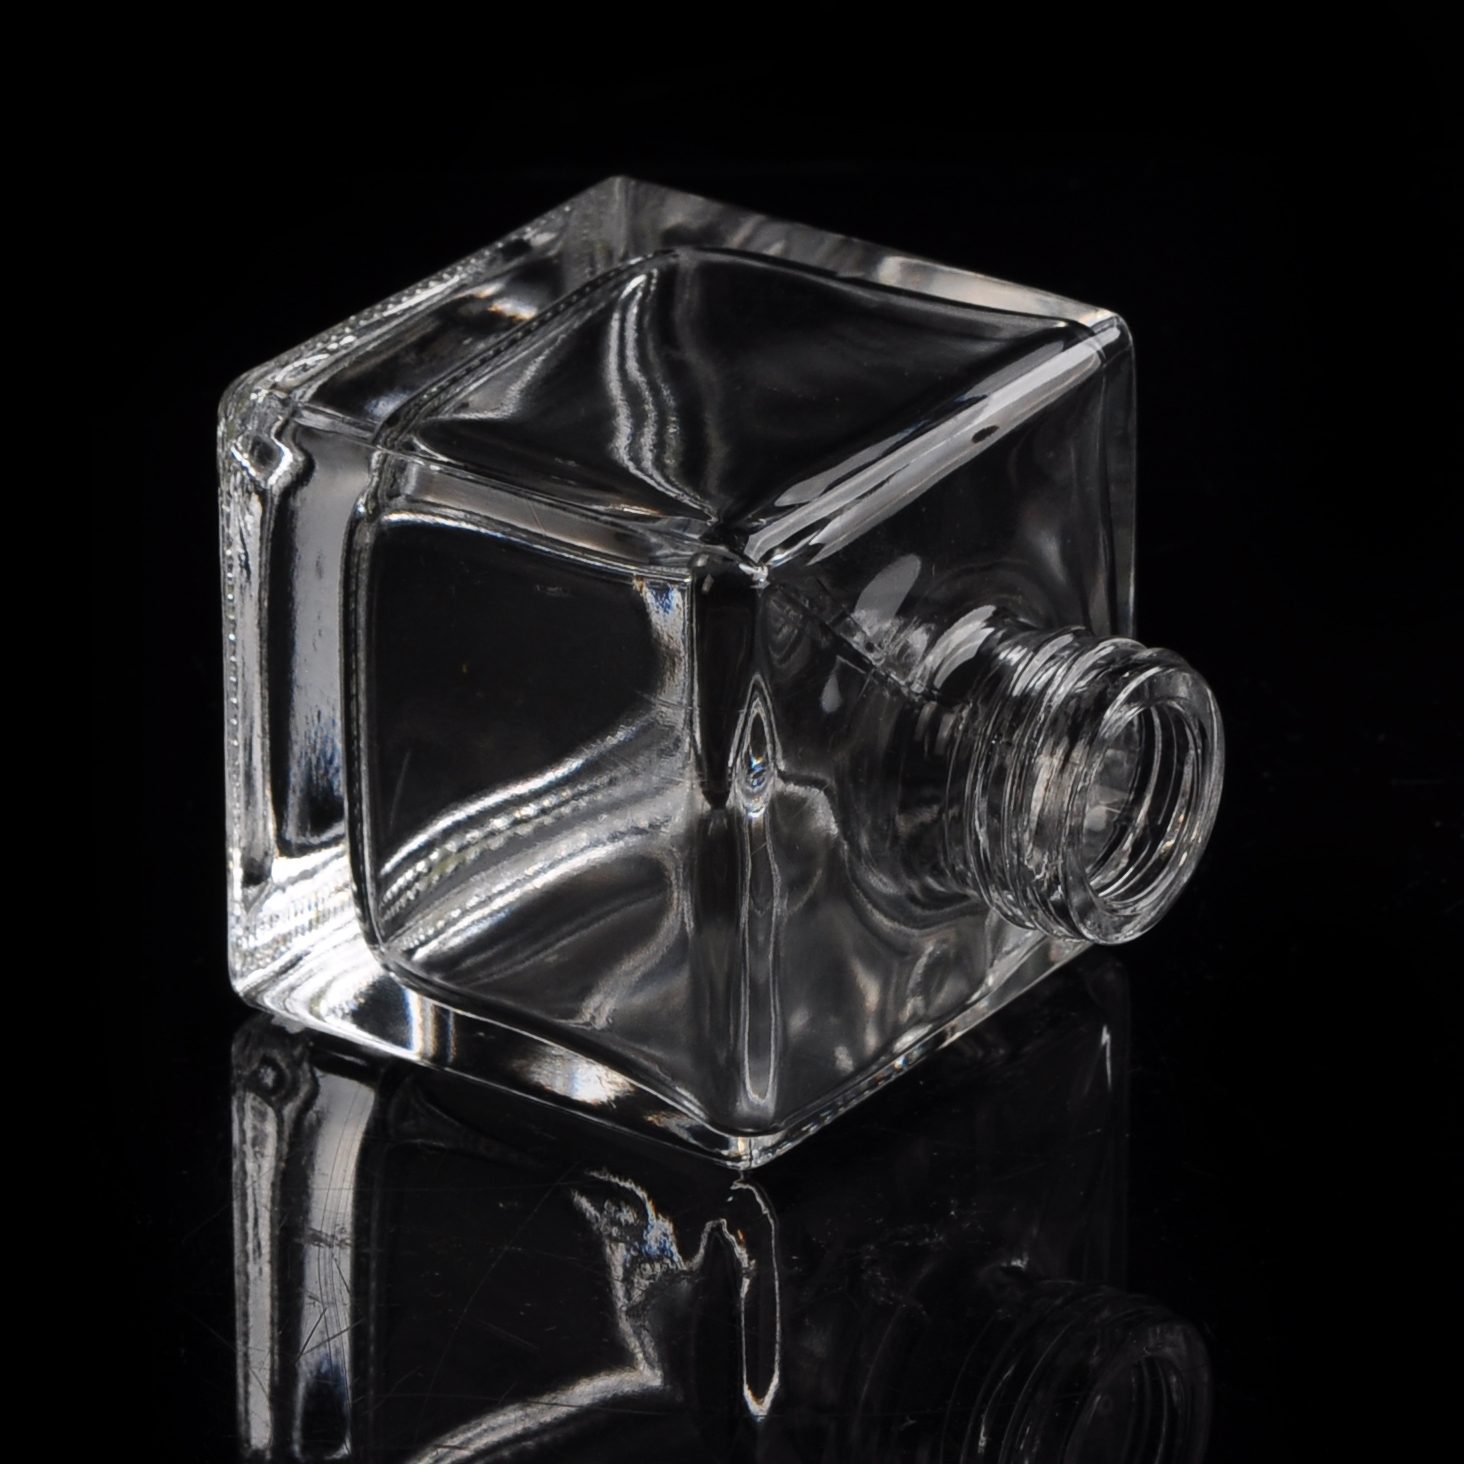 60ml mewah botol kaca penyegar kaca kristal mewah